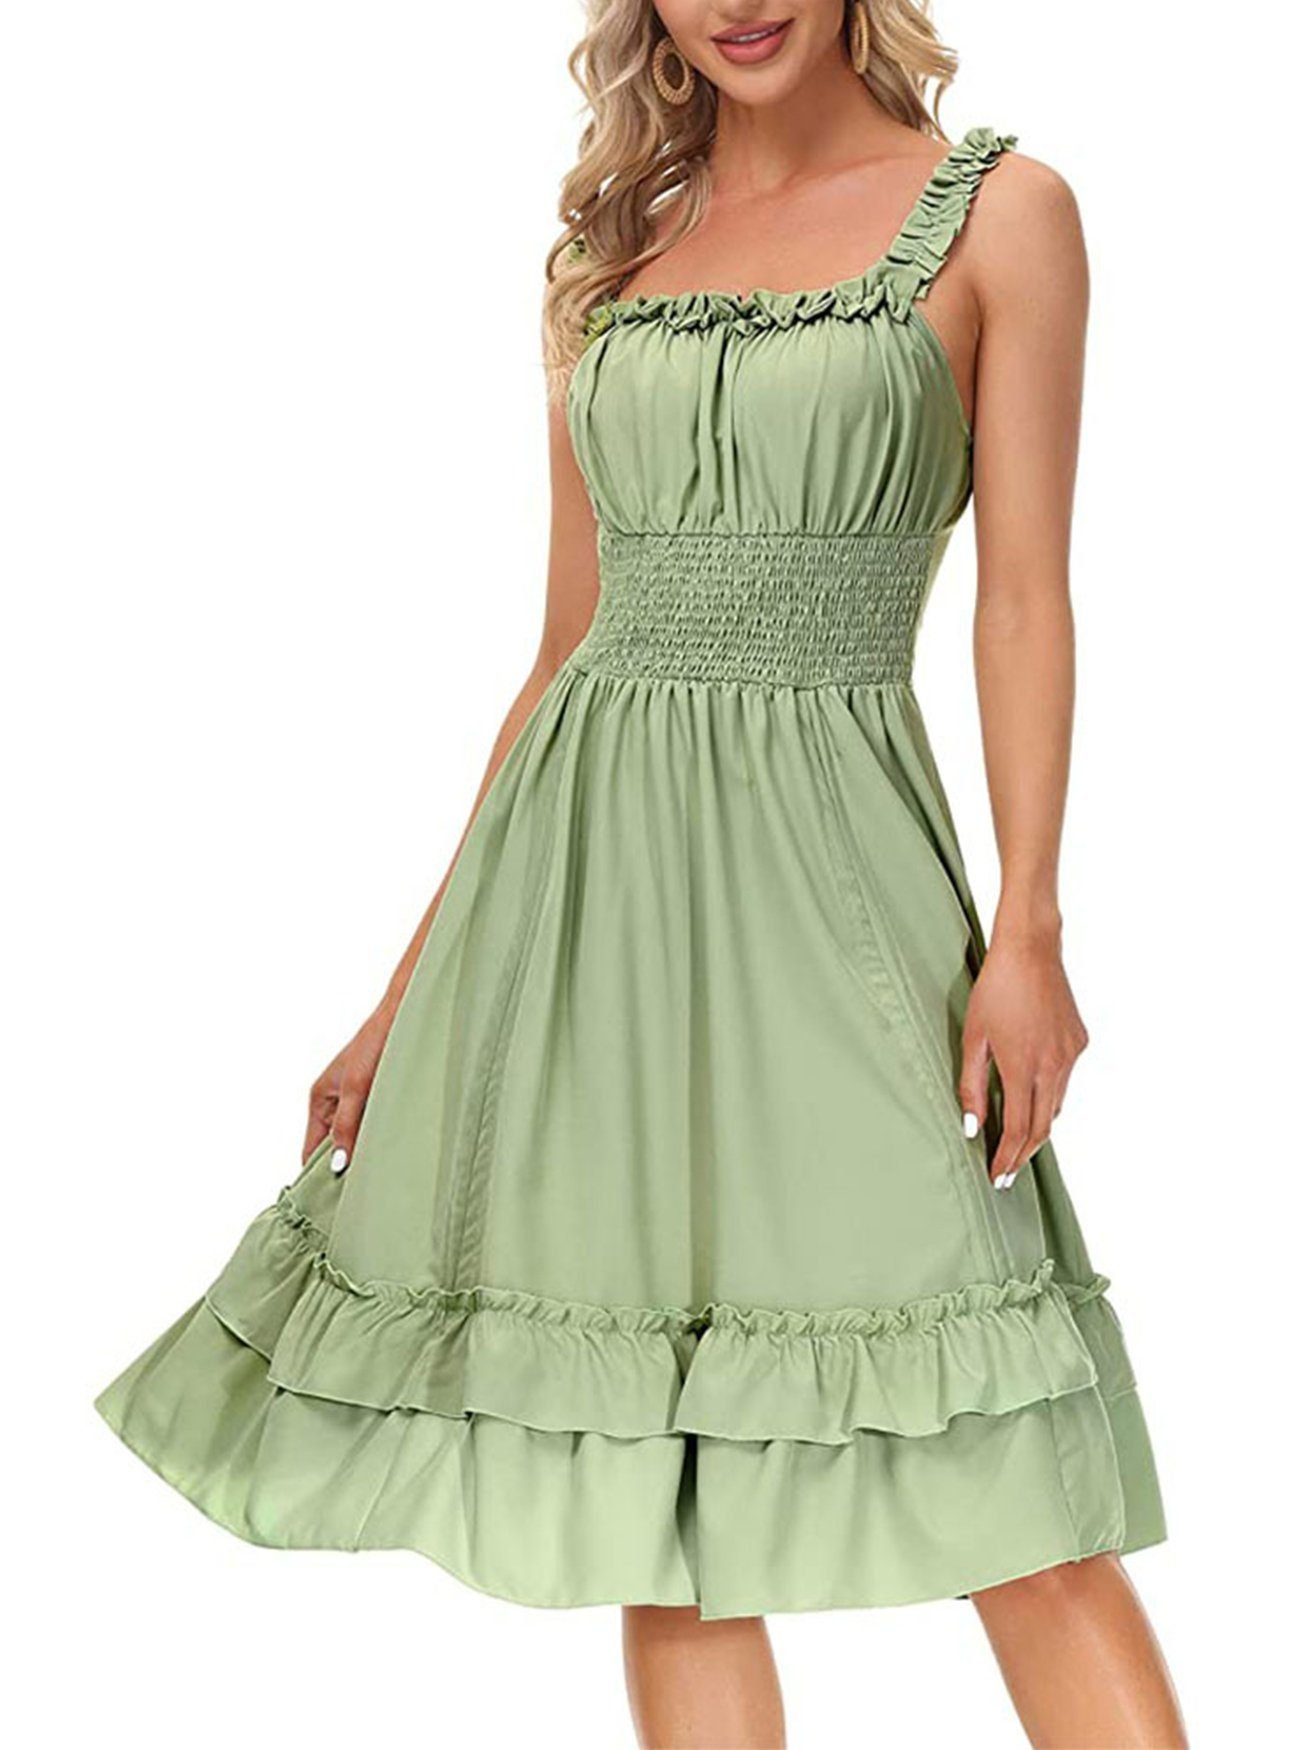 LIIKIL A-Linien-Rock Damen Steampunk A-Line Kleid